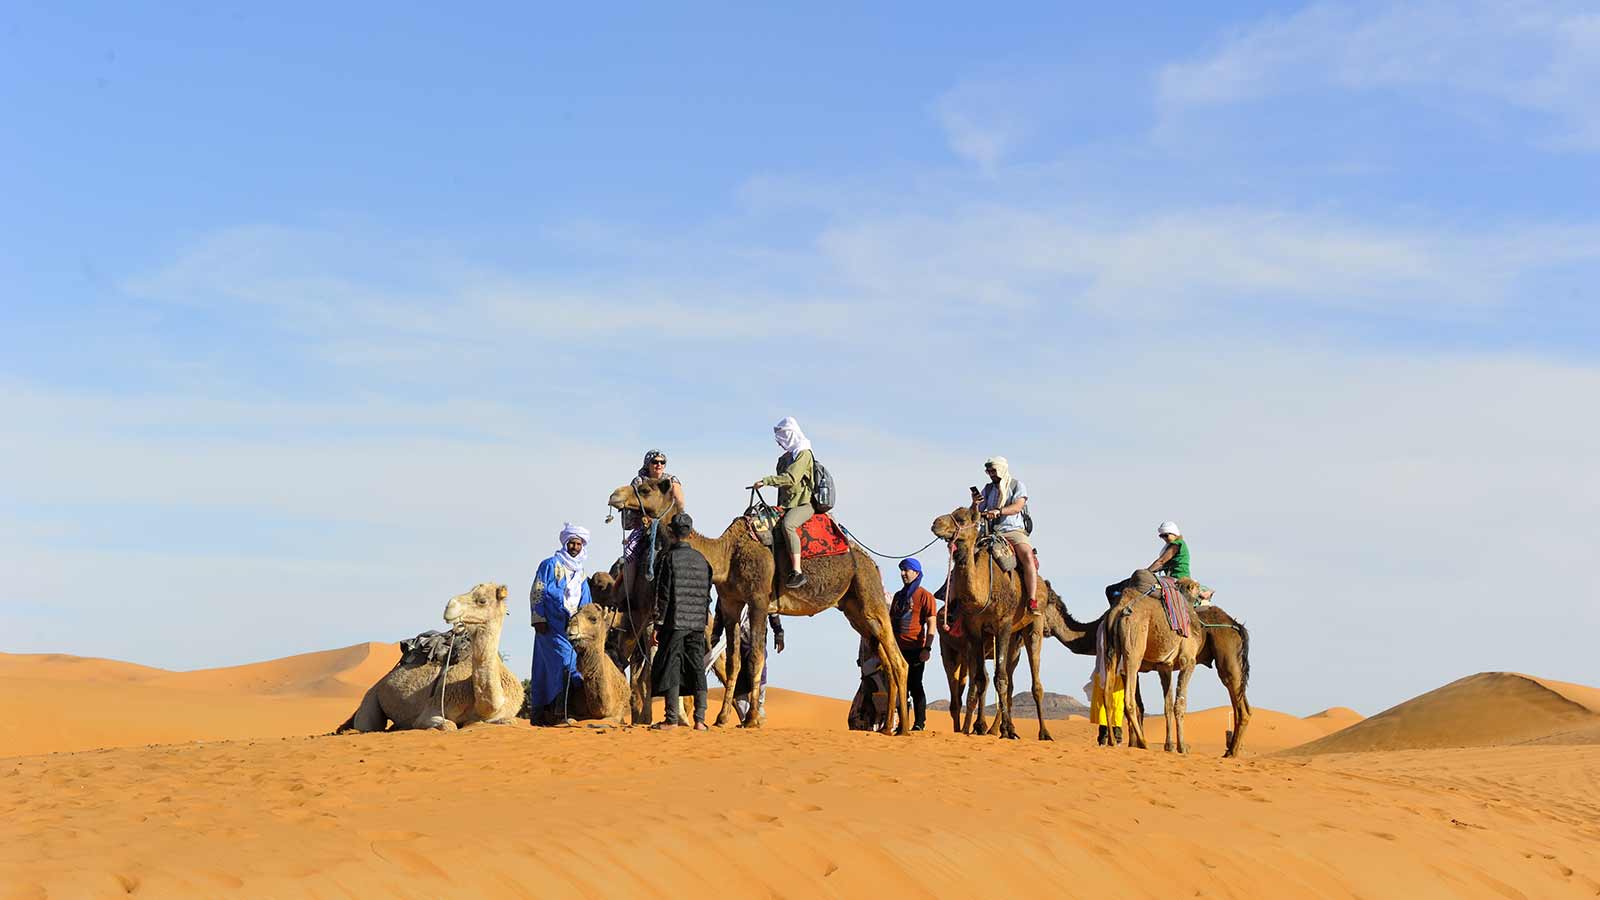 marrakech desert tour 3 days